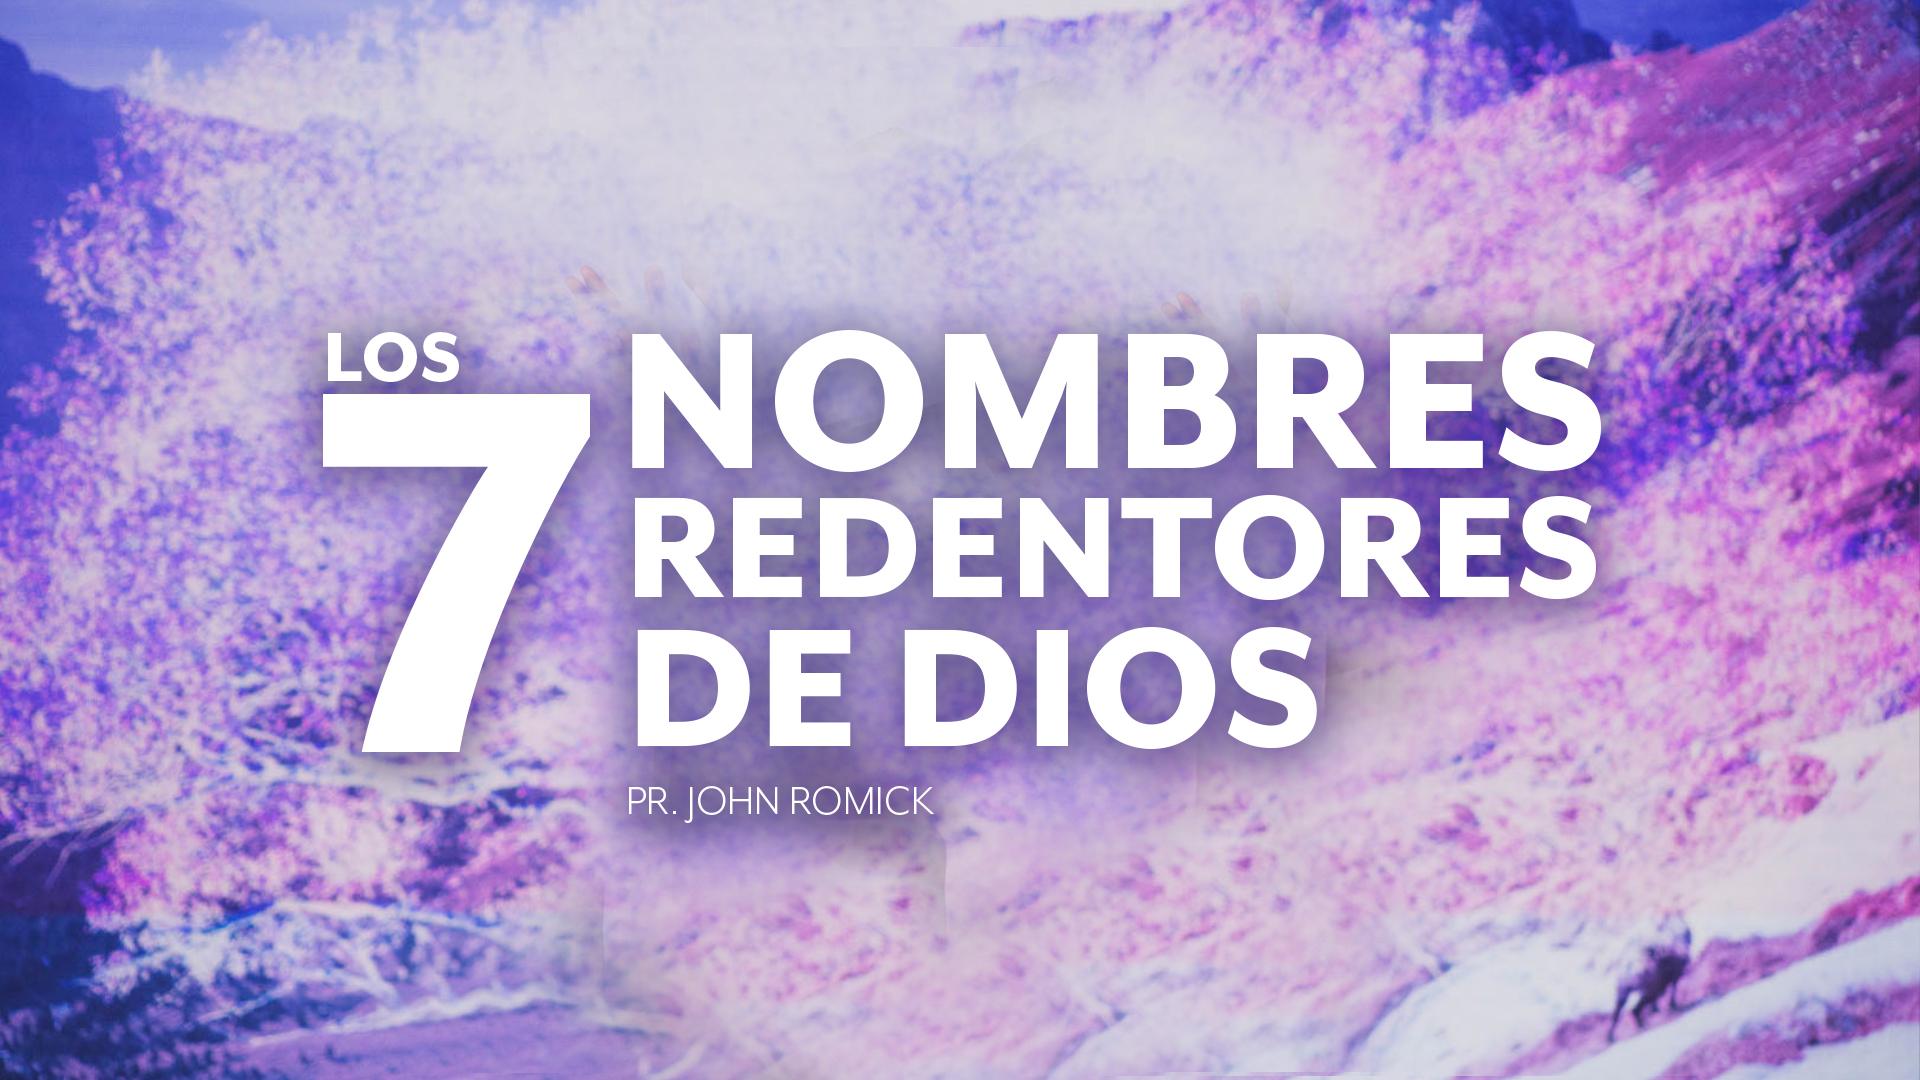 LOS 7 NOMBRES REDENTORES DE DIOS